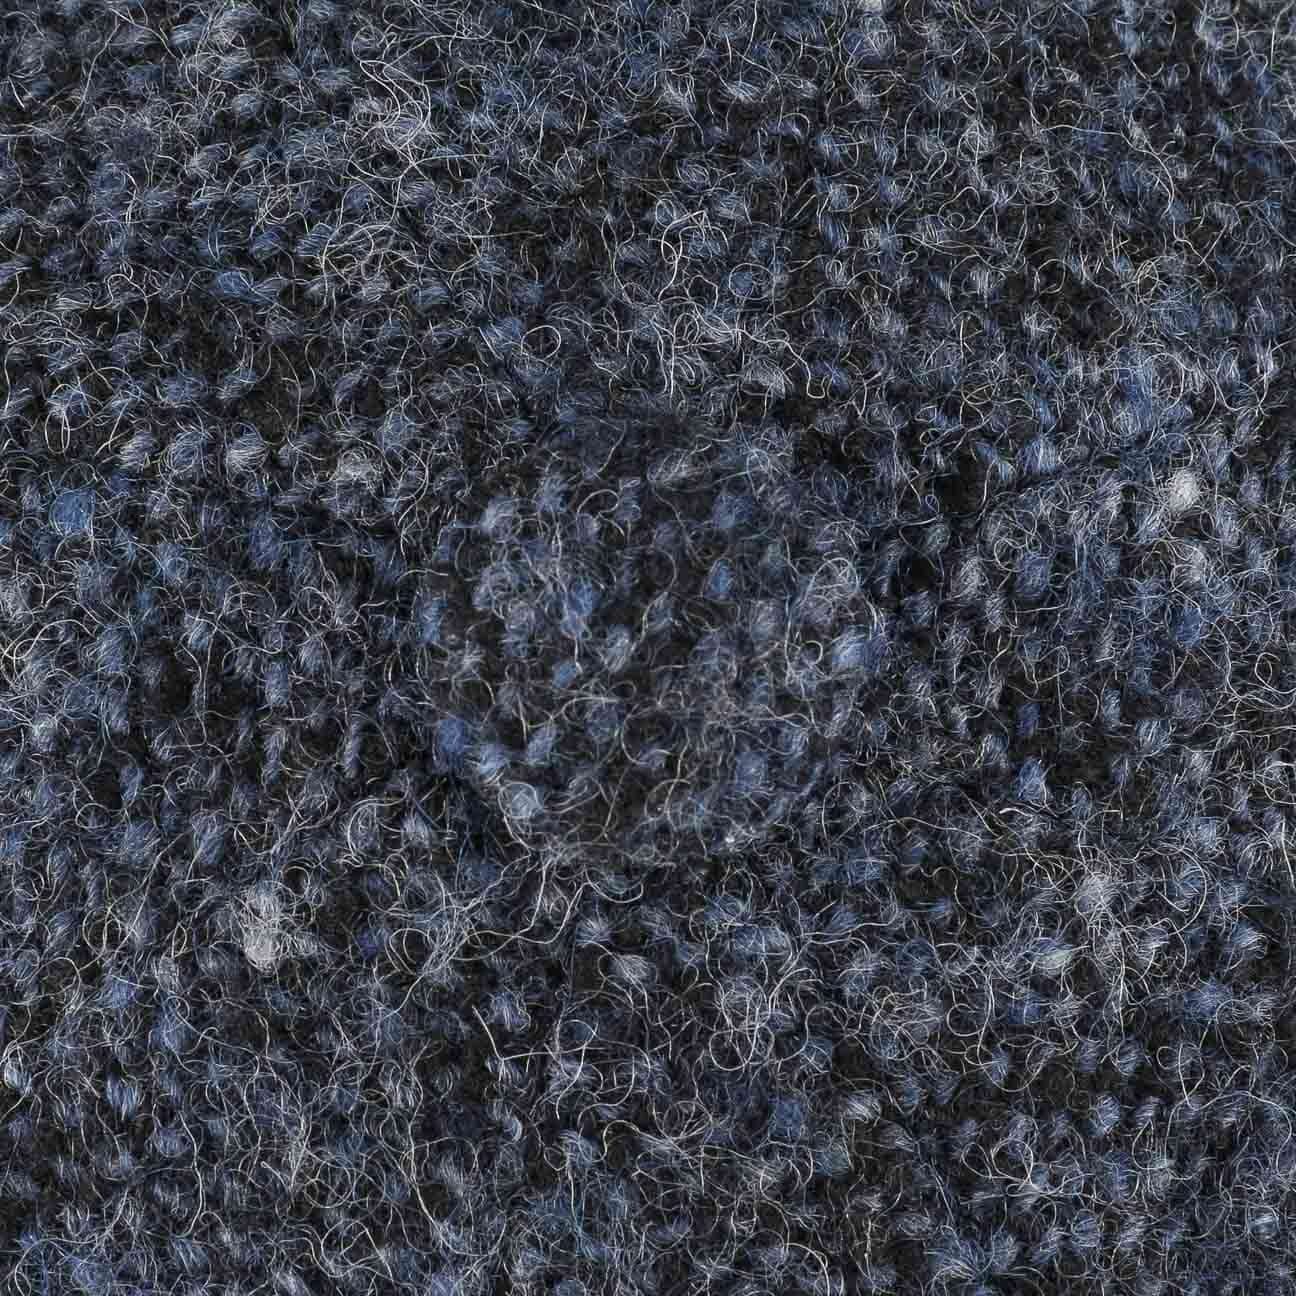 Flat Wollcap (1-St) mit Schirm Stetson Cap dunkelblau